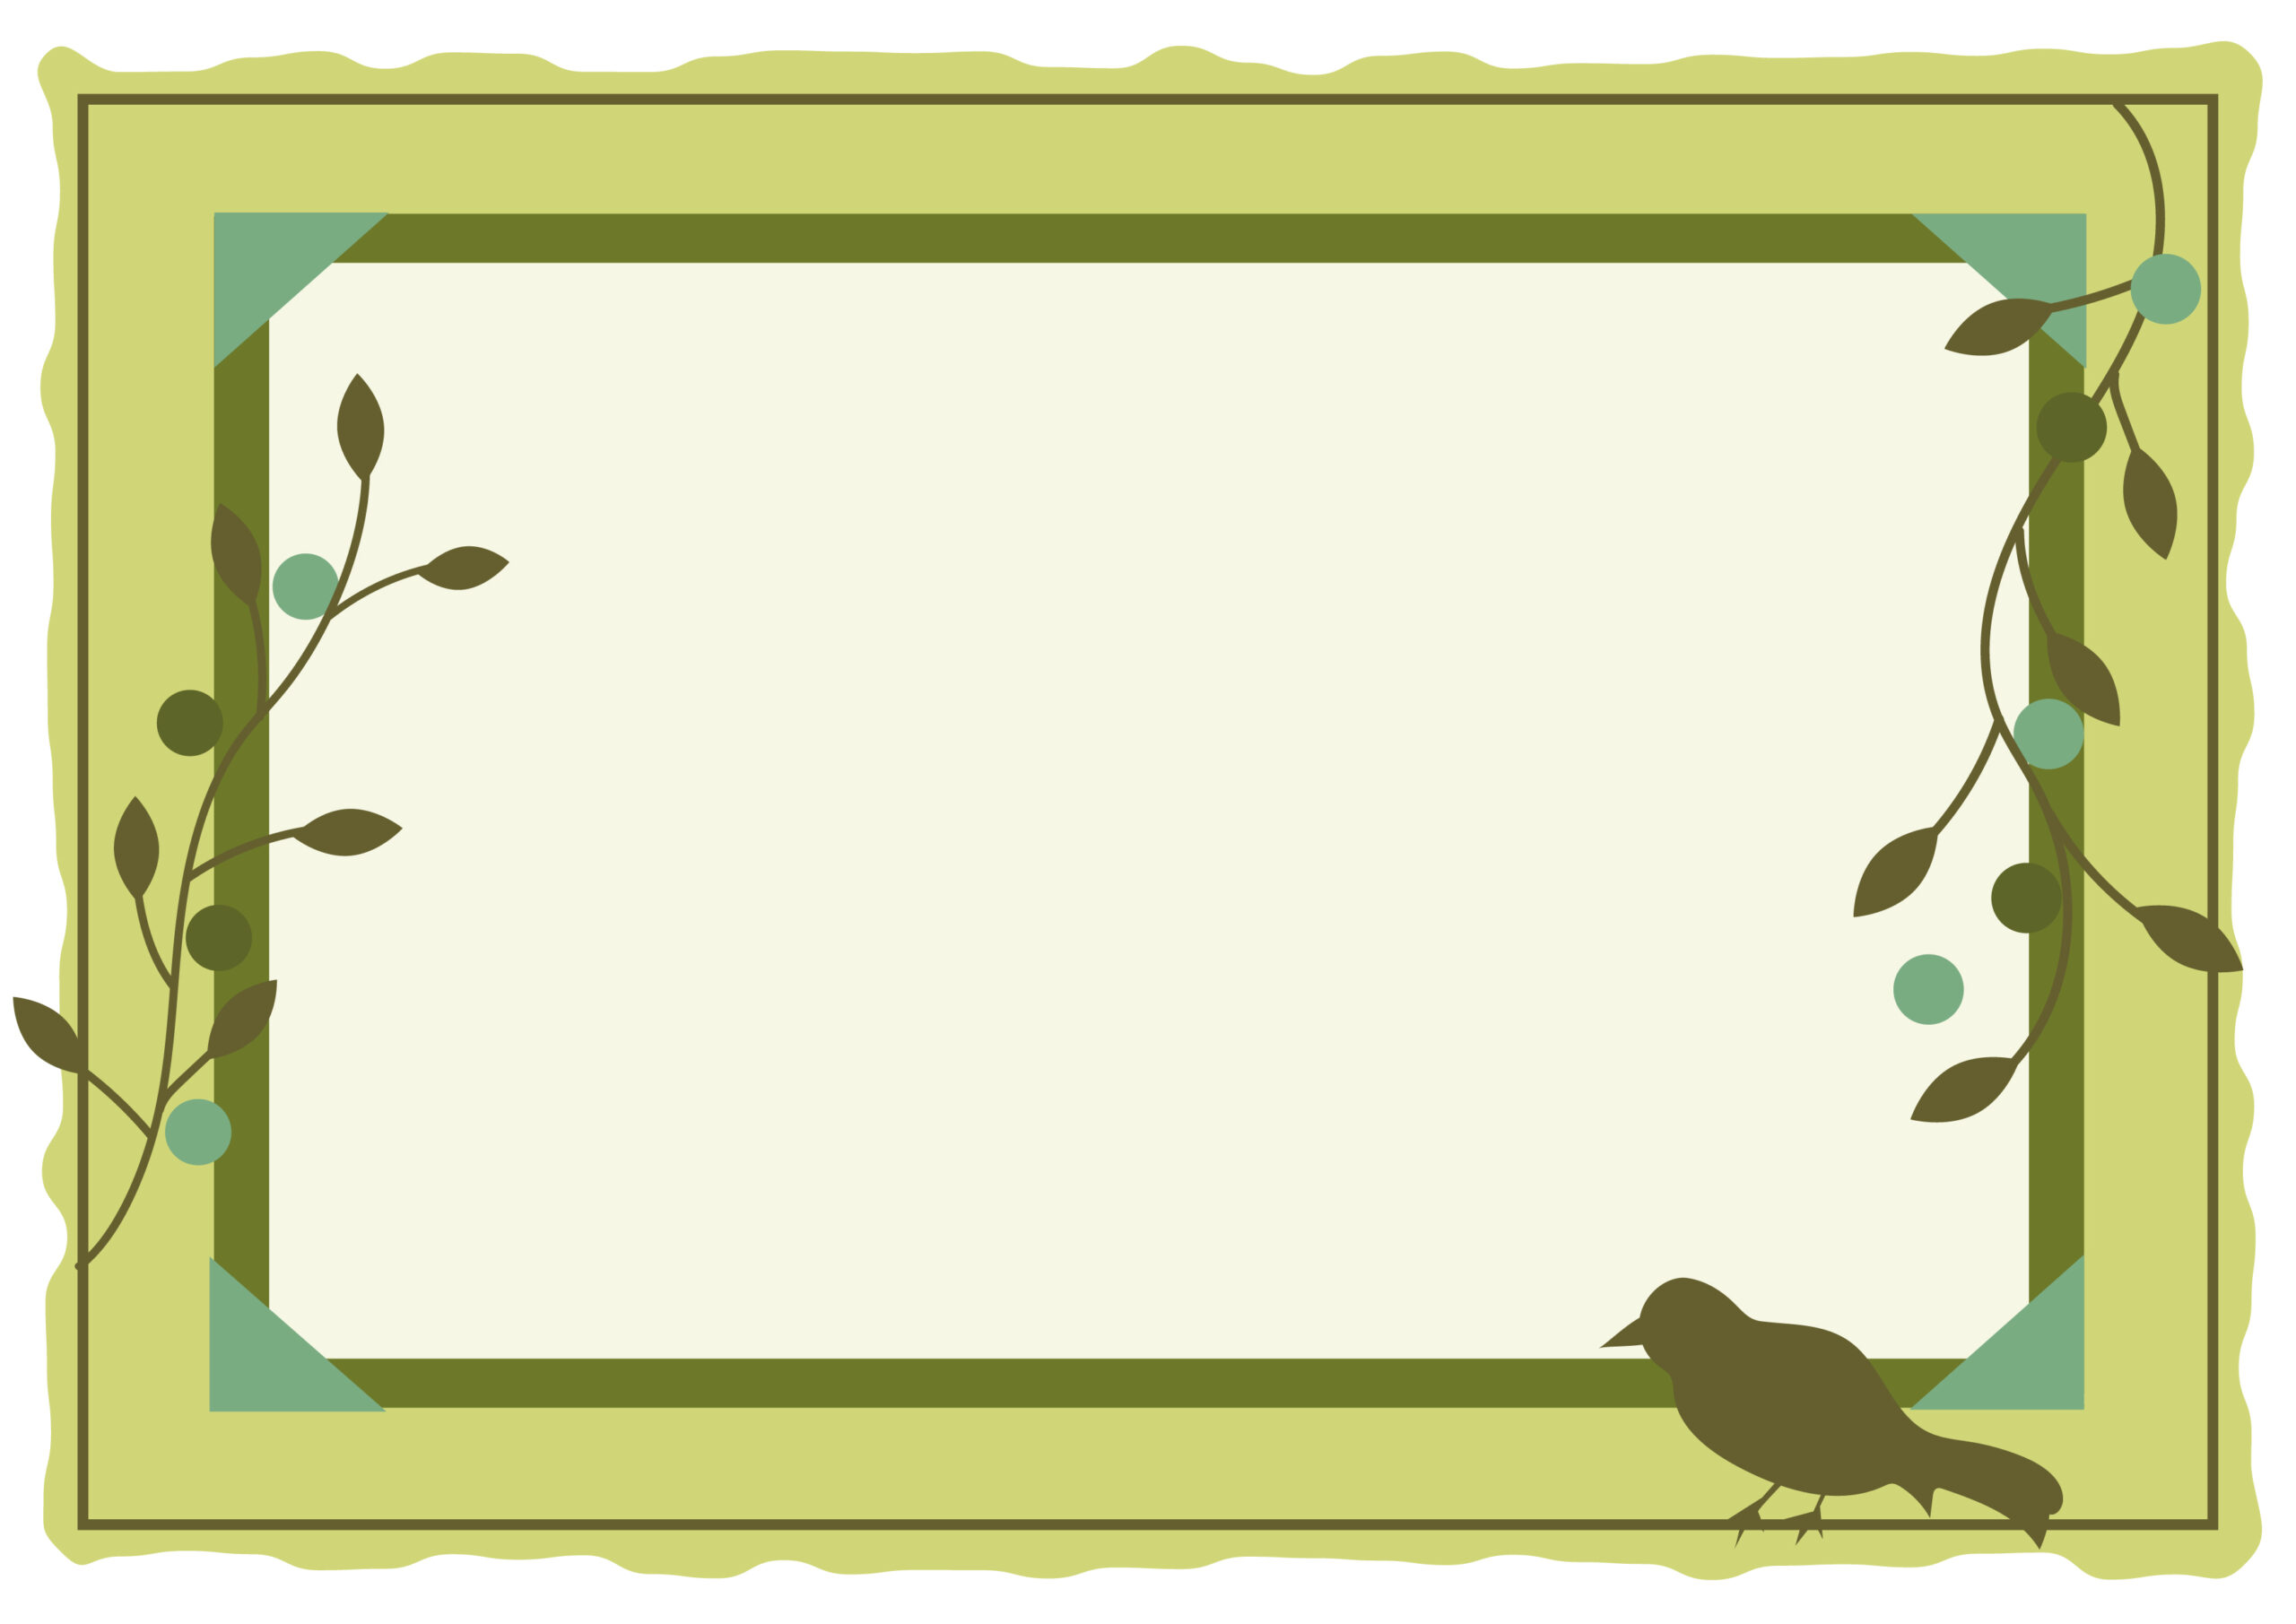 5月や6月のカレンダーの飾り枠におすすめするおしゃれなデザインのフレーム素材です。淡いグリーンカラーで、植物と鳥のシルエットイラスト入りとなり、PNG画像を挿入してアレンジするとオリジナルの素材が作成いただけます。ダウンロード：JP